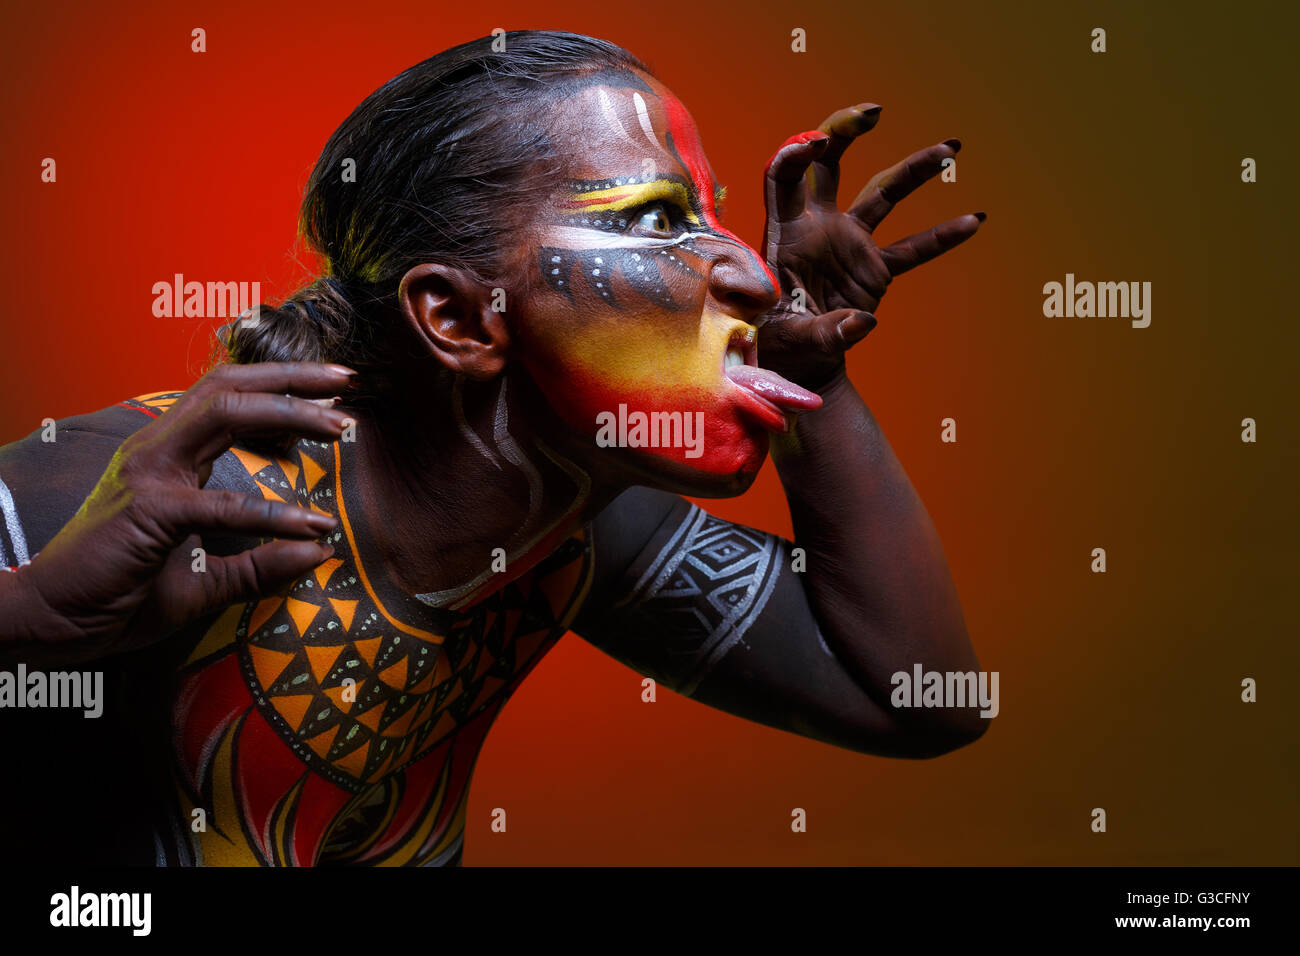 Bodypainting. Femme peint avec des motifs ethniques Banque D'Images